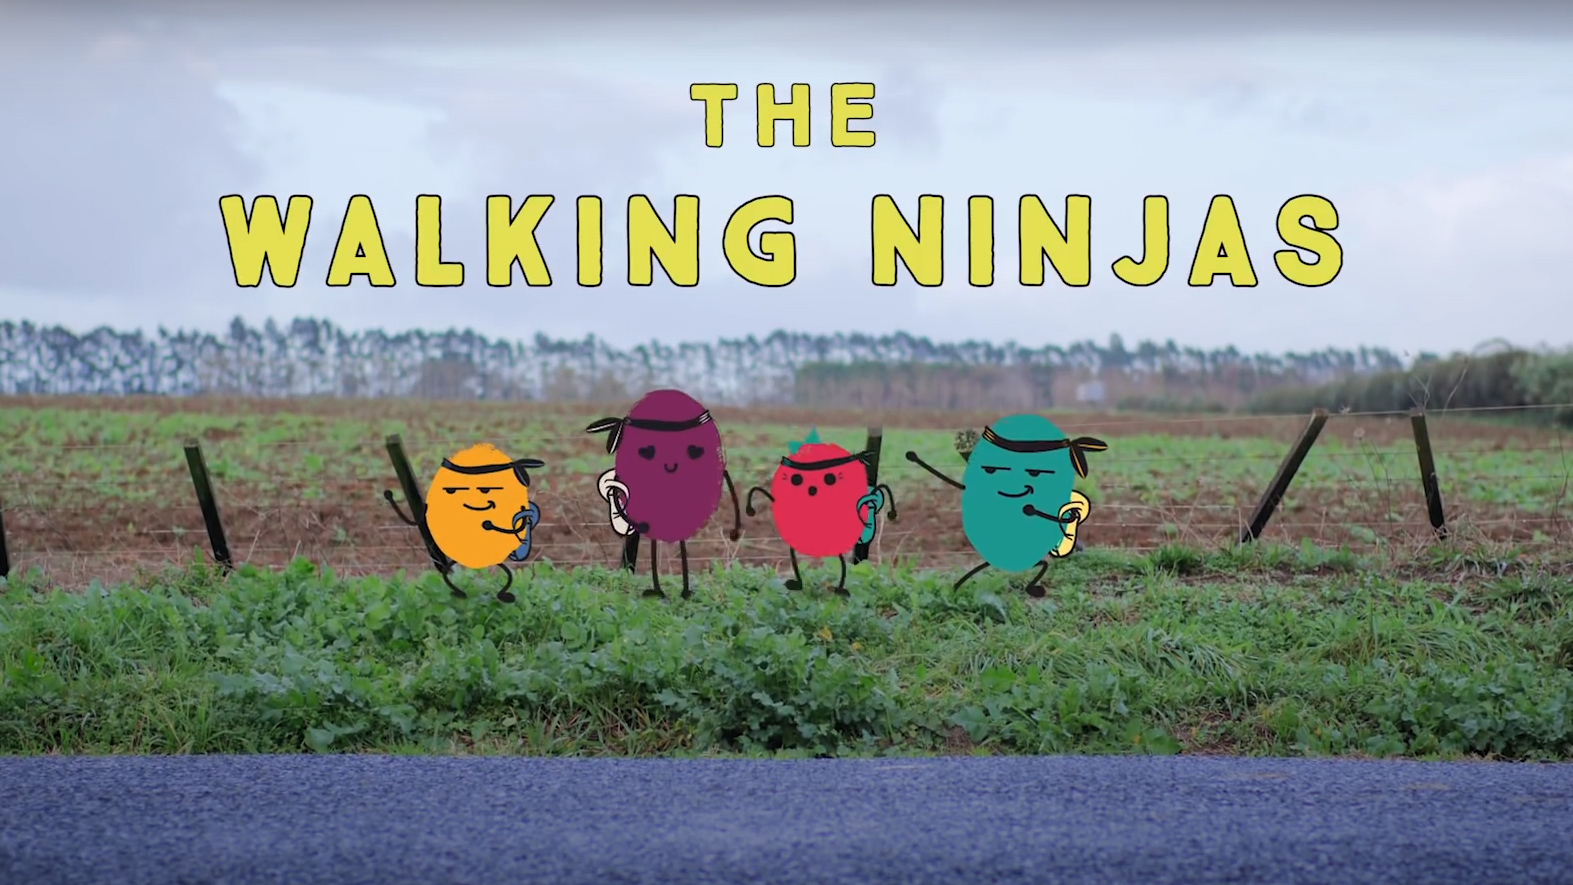 The walking ninjas title